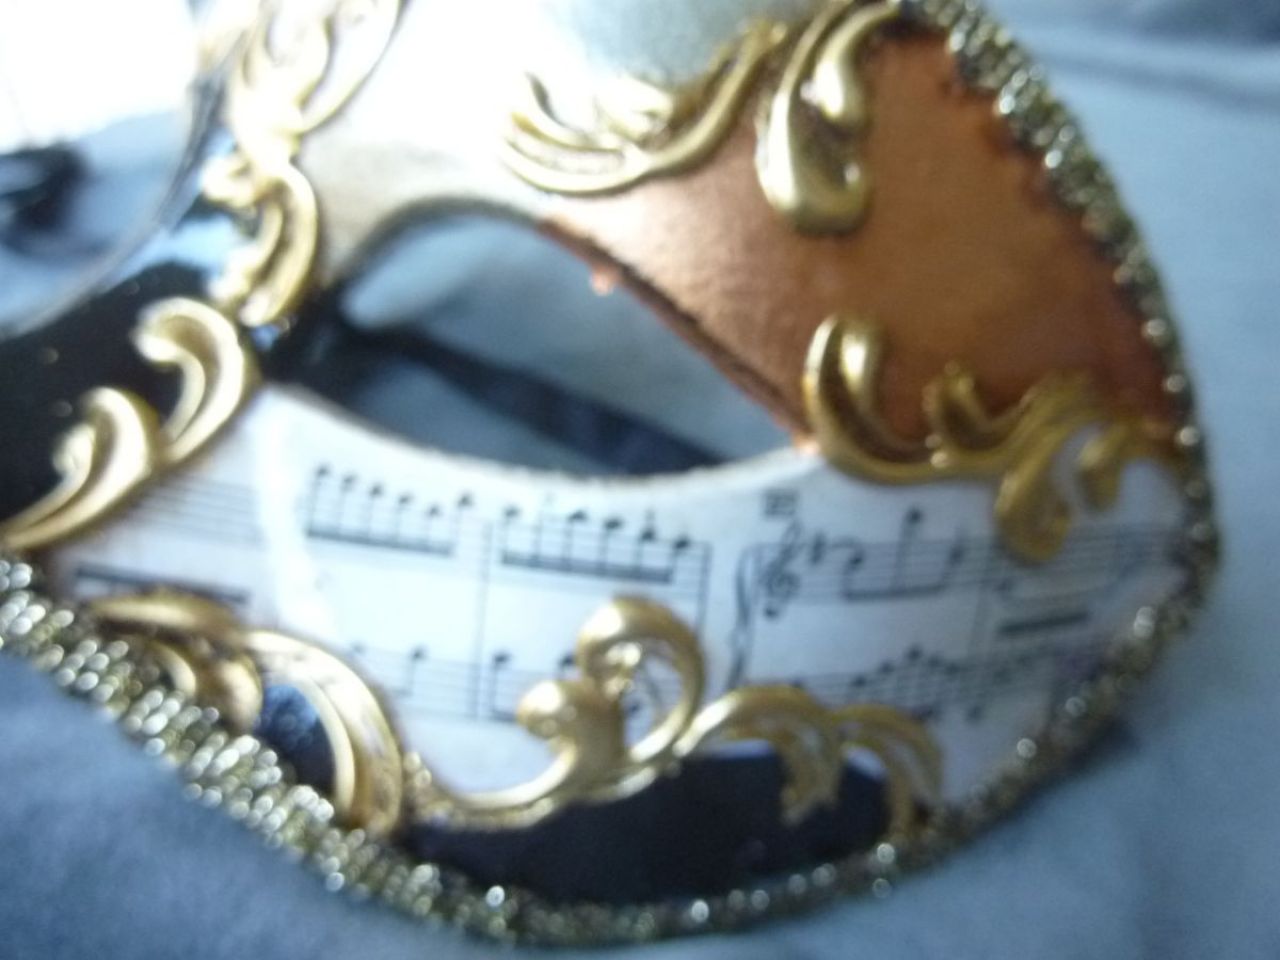 masque loup décoré à la main avec feuille d'or, d'argent, de cuivre et partition de musique,gallon doré